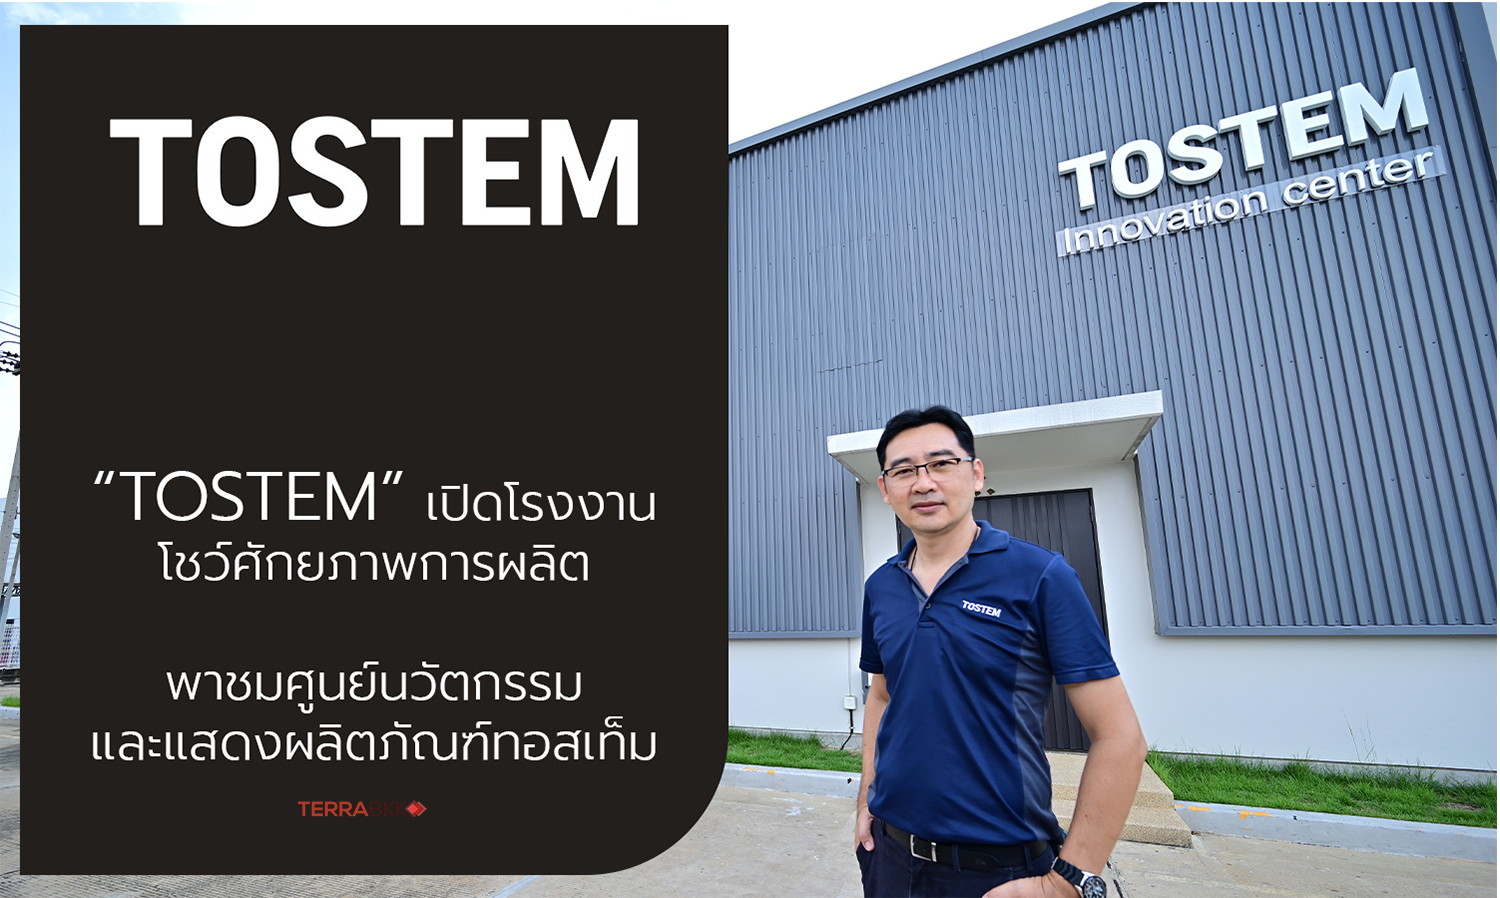 ทอสเท็ม เปิดโรงงานโชว์ไลน์ผลิต - TOSTEM Innovation Center ย้ำความเป็นผู้นำผู้ผลิตประตู-หน้าต่างอะลูมิเนียมครบวงจร 